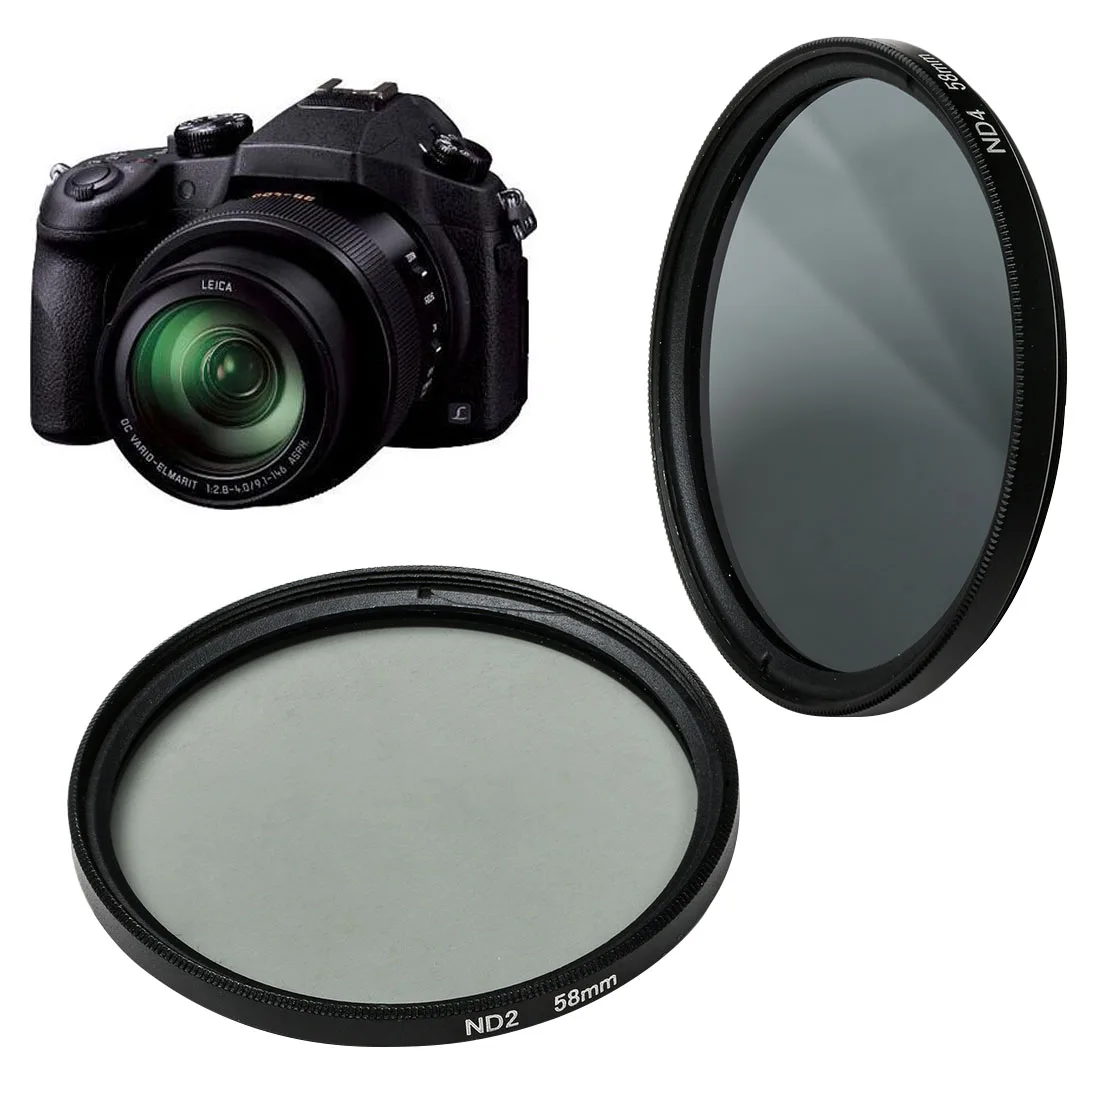 CENTECHIA FLD UV Звездный MC светофильтр из светофильтр для линз ND2/4/8/16 системы безопасности для цифровой зеркальной камеры Nikon Canon EOS 7D 5D 6D 50D 60D 600D d5200 d3300 T5i